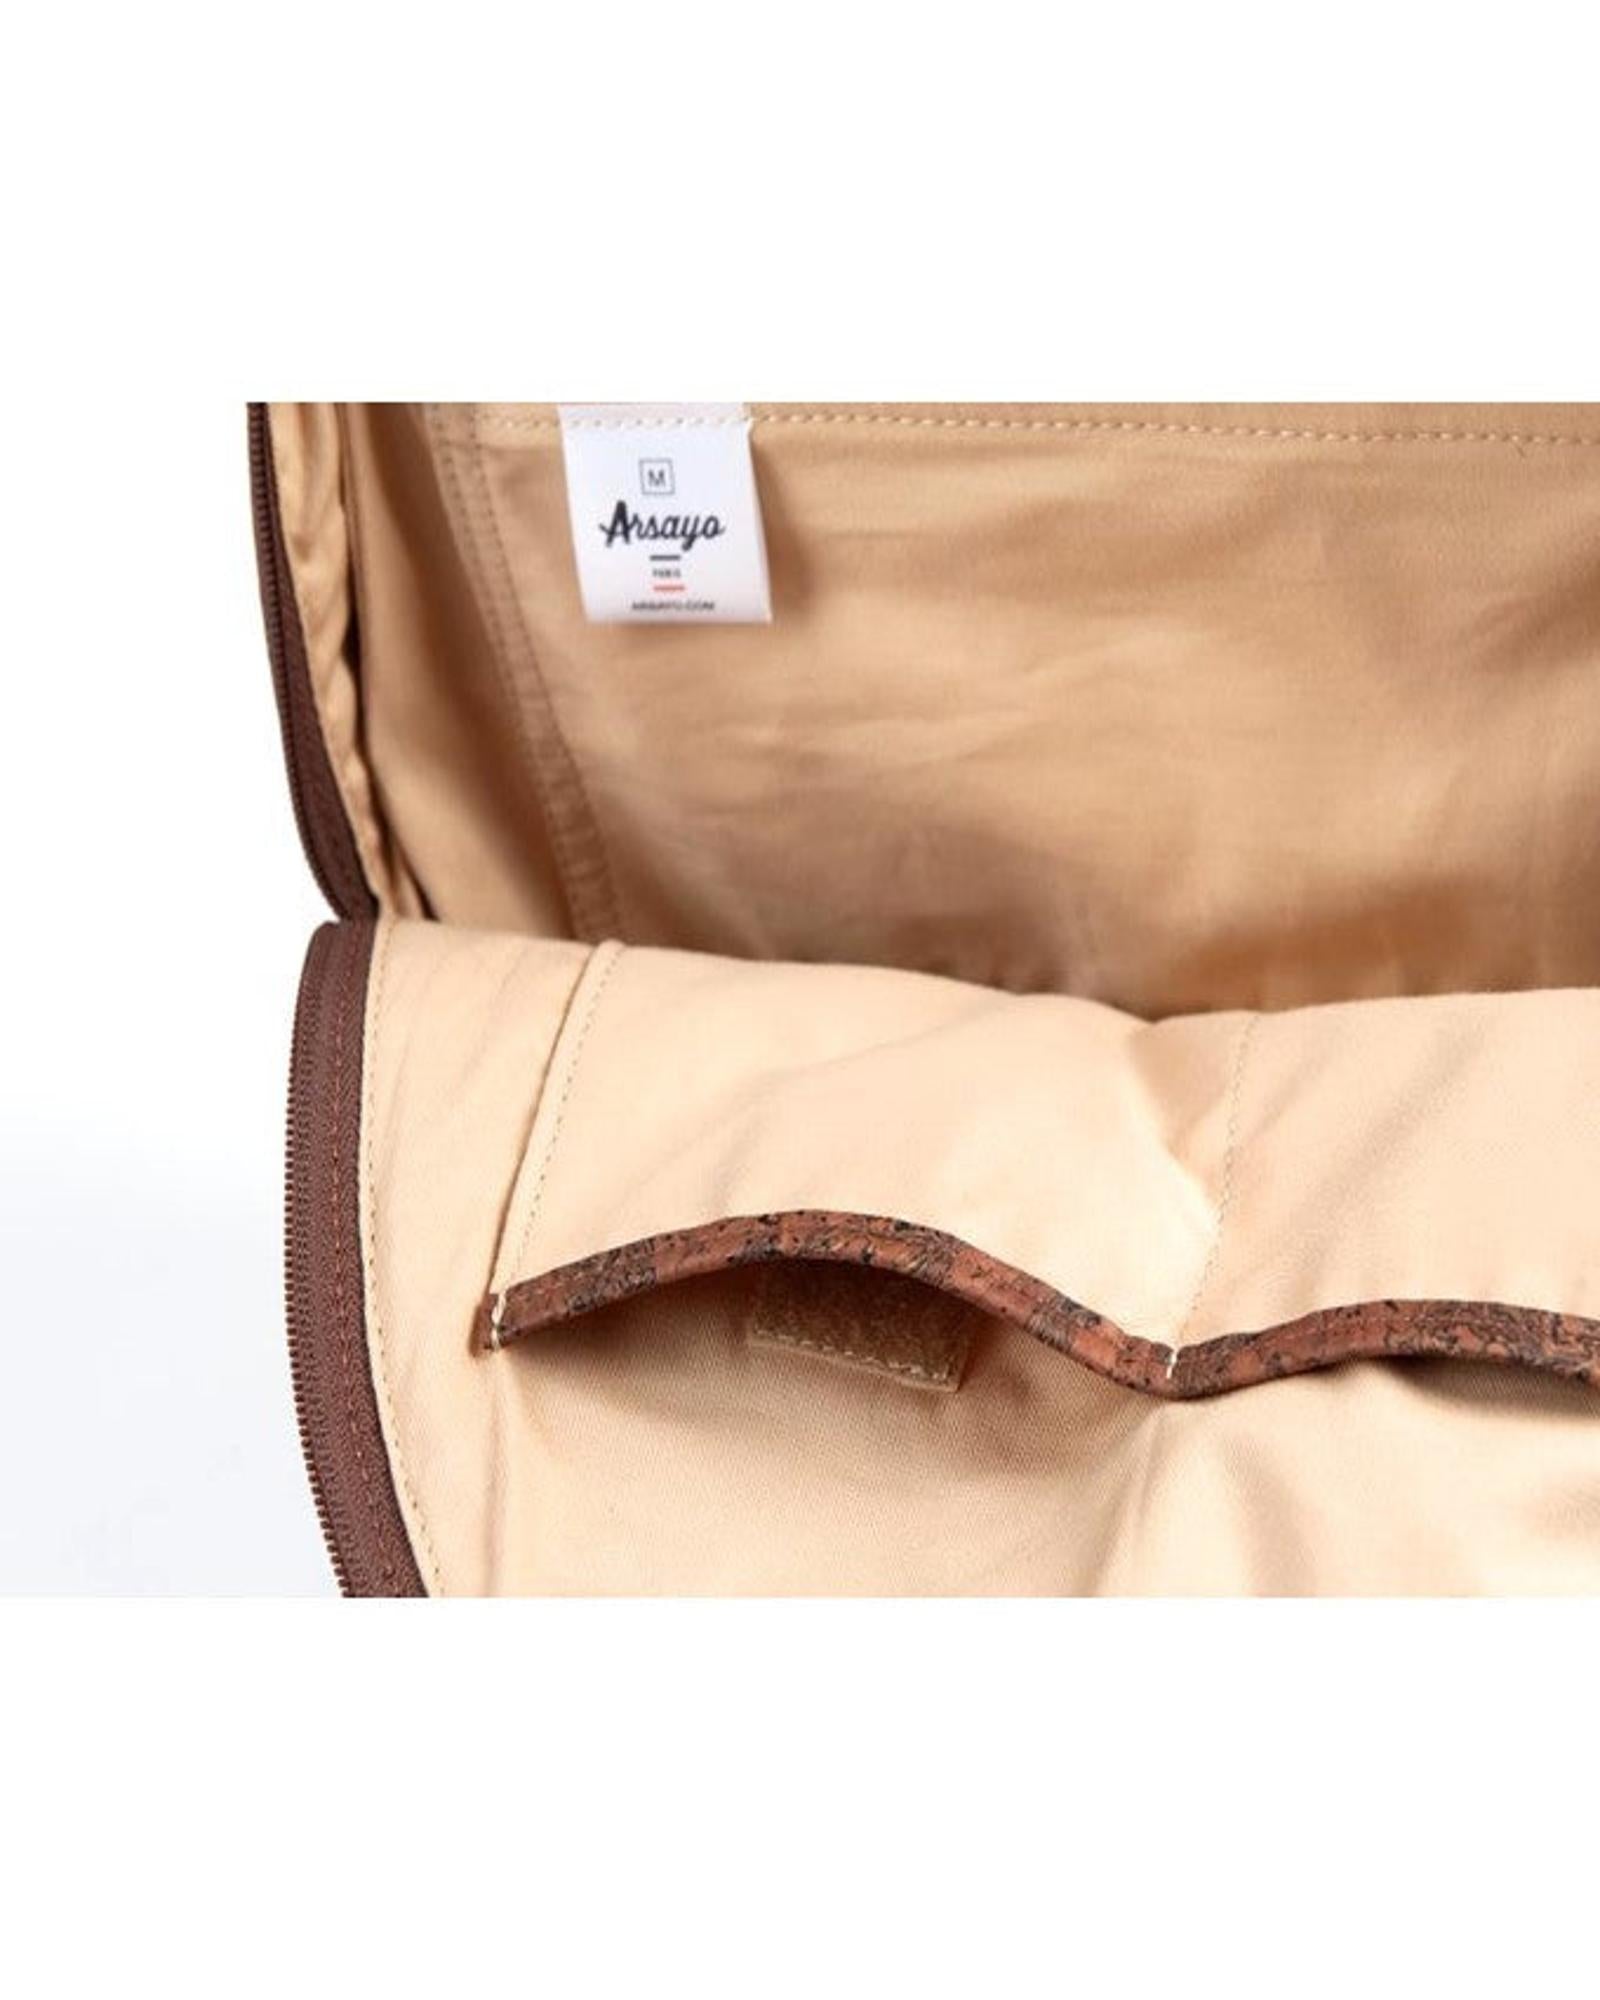 ARSAYO - ARSAYO Original Backpack | Yellow Mustard